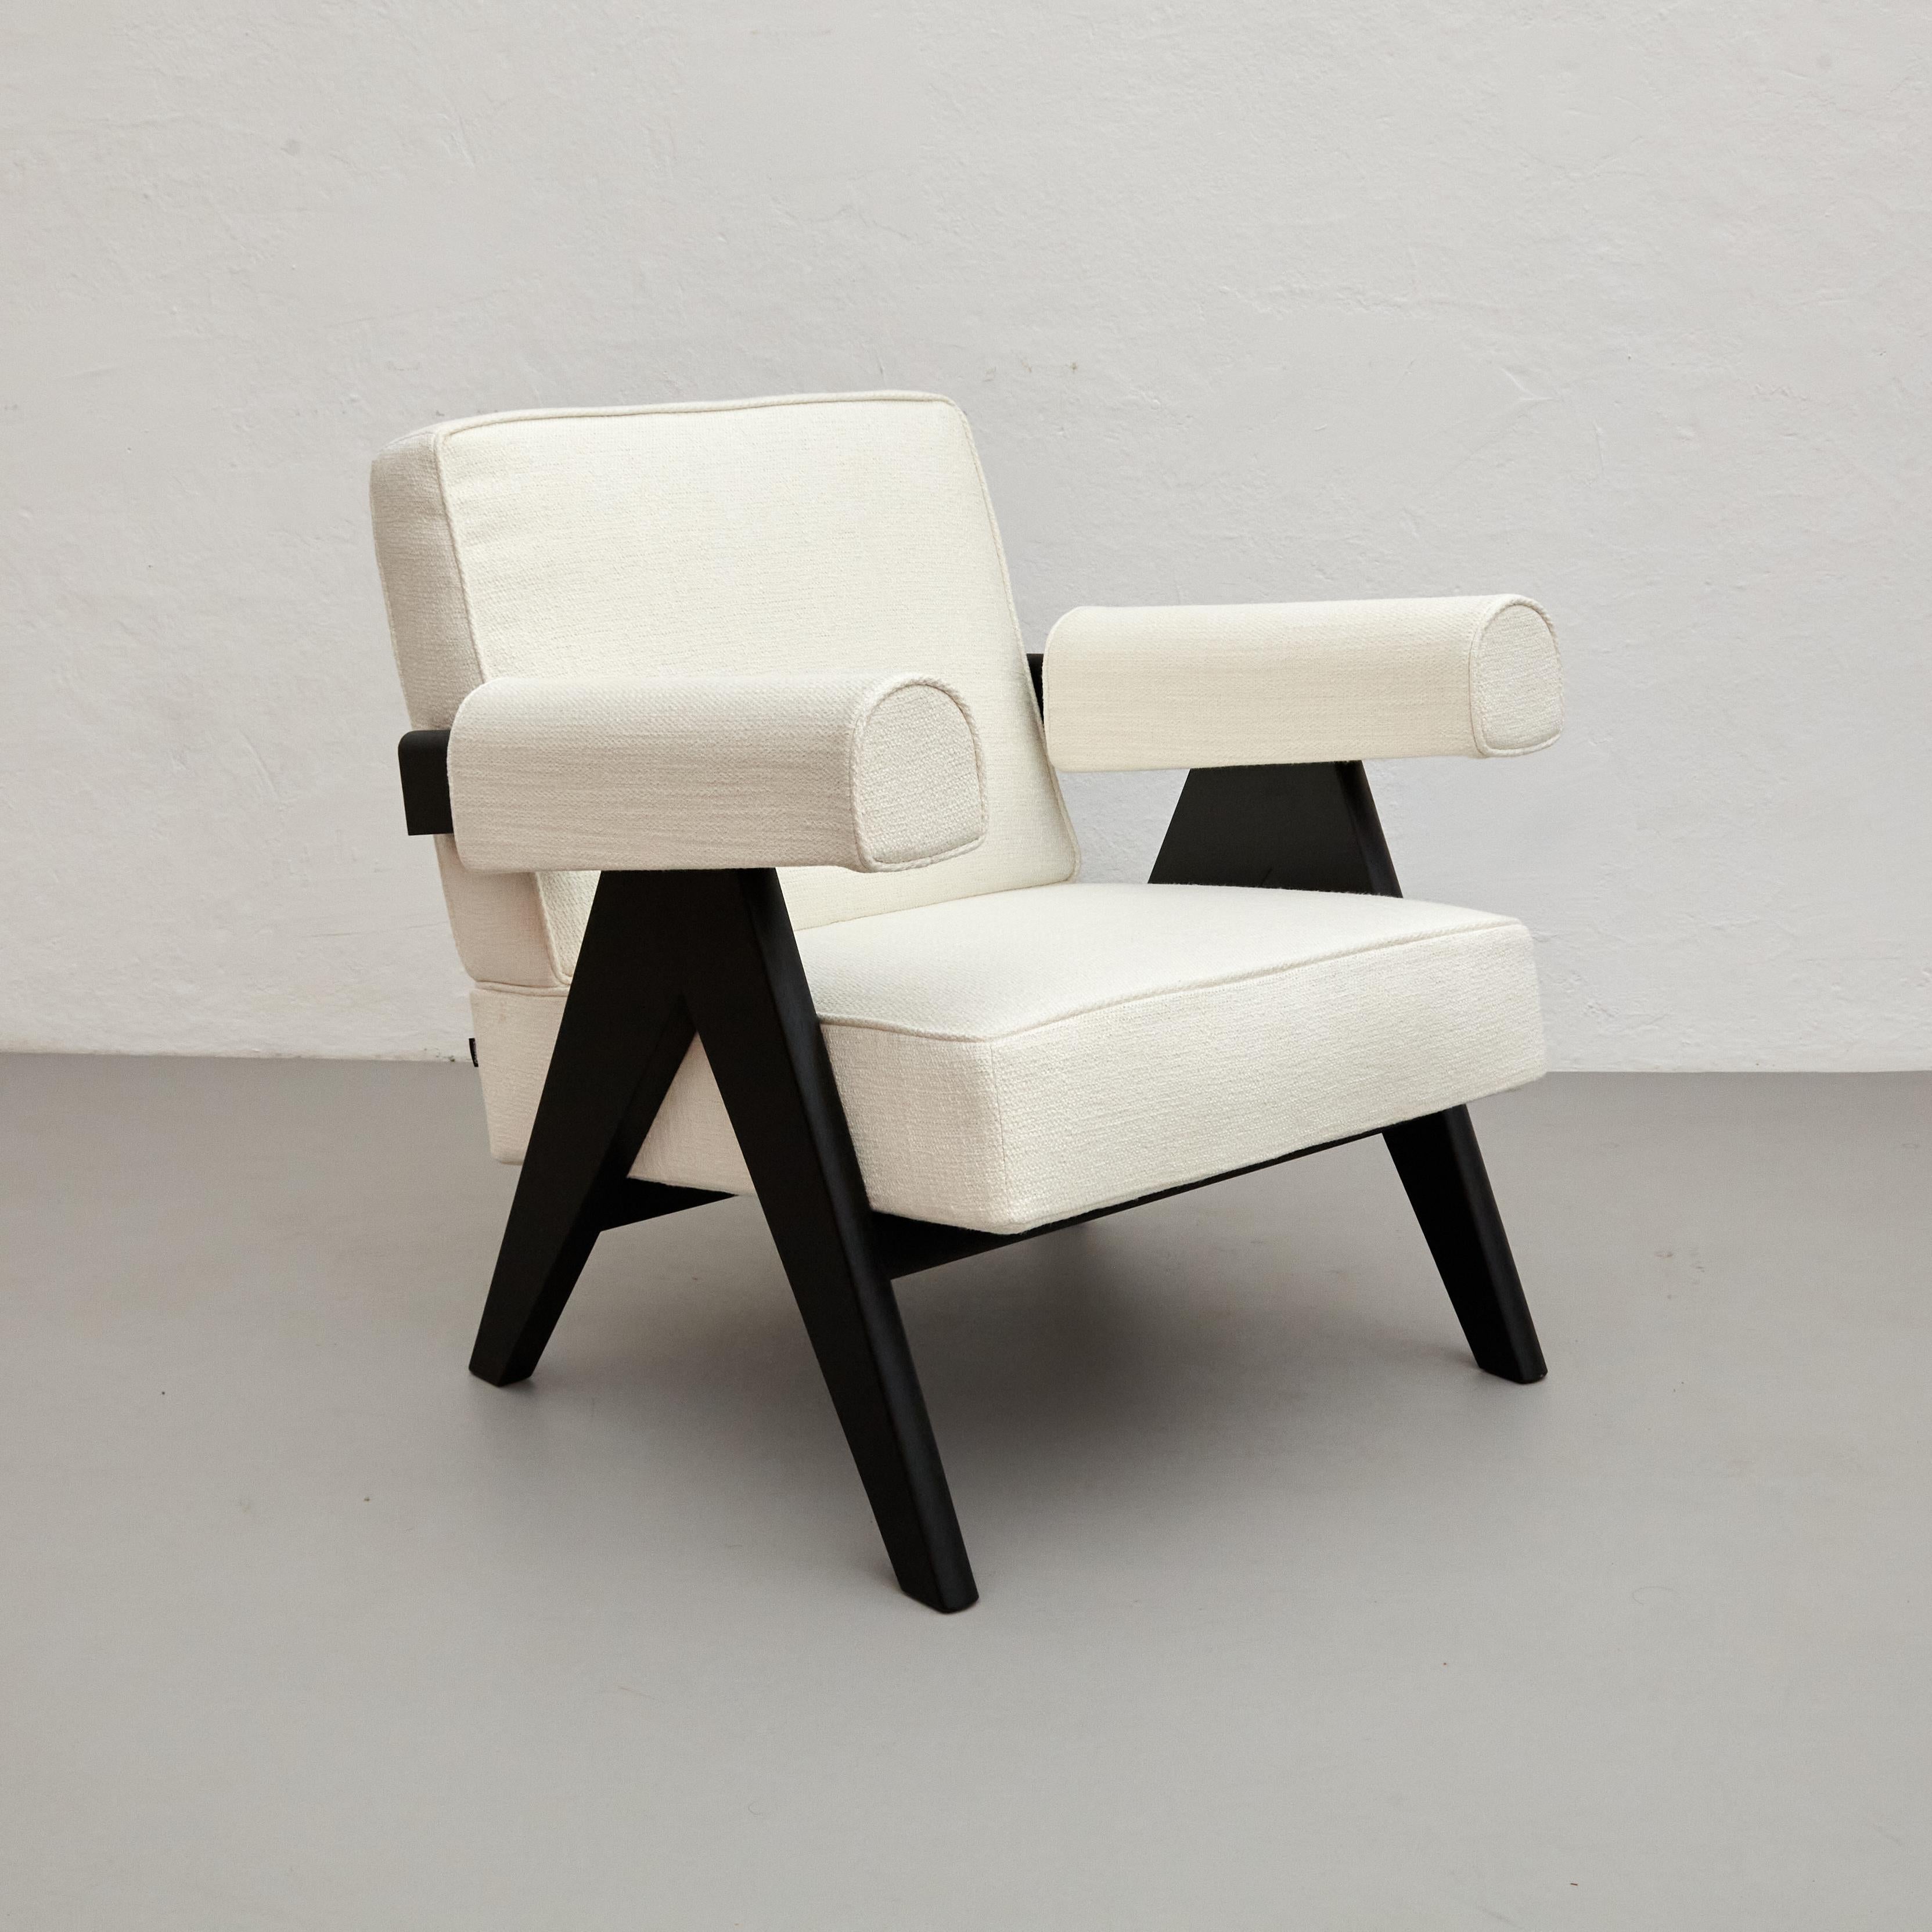 Sessel, entworfen von Pierre Jeanneret um 1950, neu aufgelegt im Jahr 2019.
Hergestellt von Cassina in Italien.

Die außergewöhnliche Architektur des 1951 von Le Corbusier entworfenen Capitol Complex in Chandigarh wurde von der UNESCO in die Liste